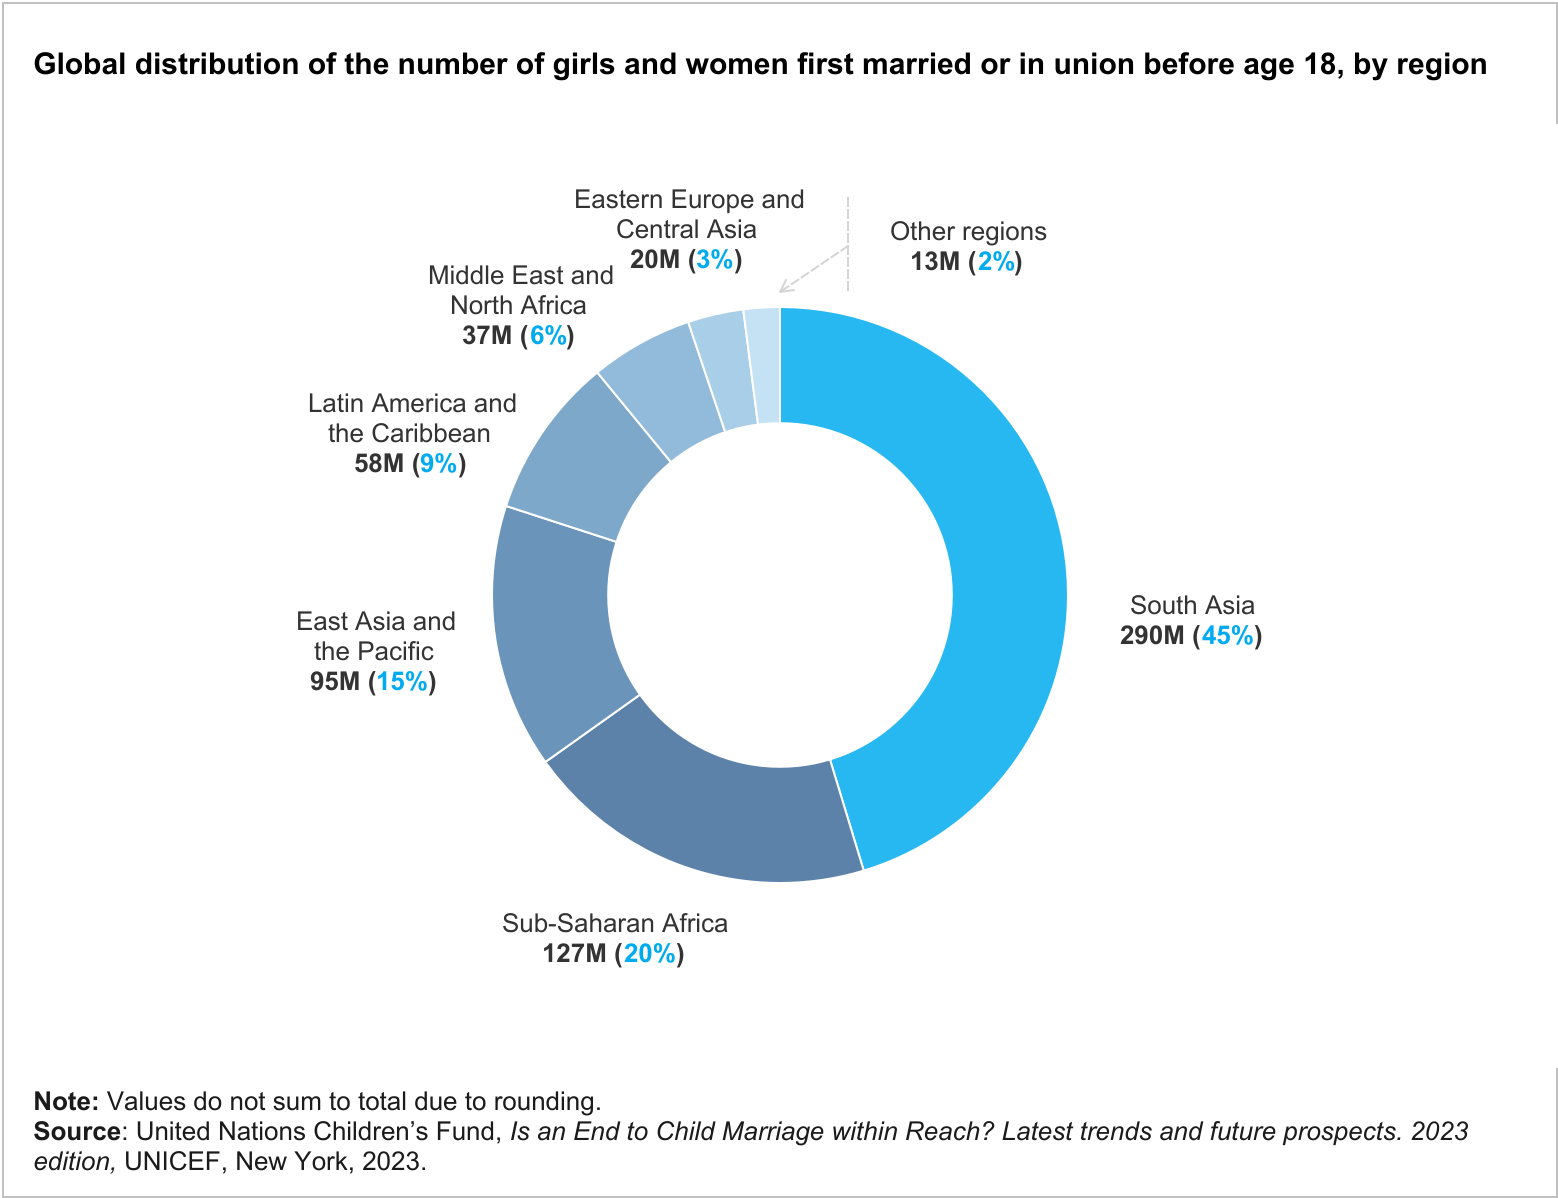 Grafik zur weltweiten Verteilung der Anzahl der Mädchen und Frauen, die vor dem 18. Lebensjahr erstmals geheiratet haben